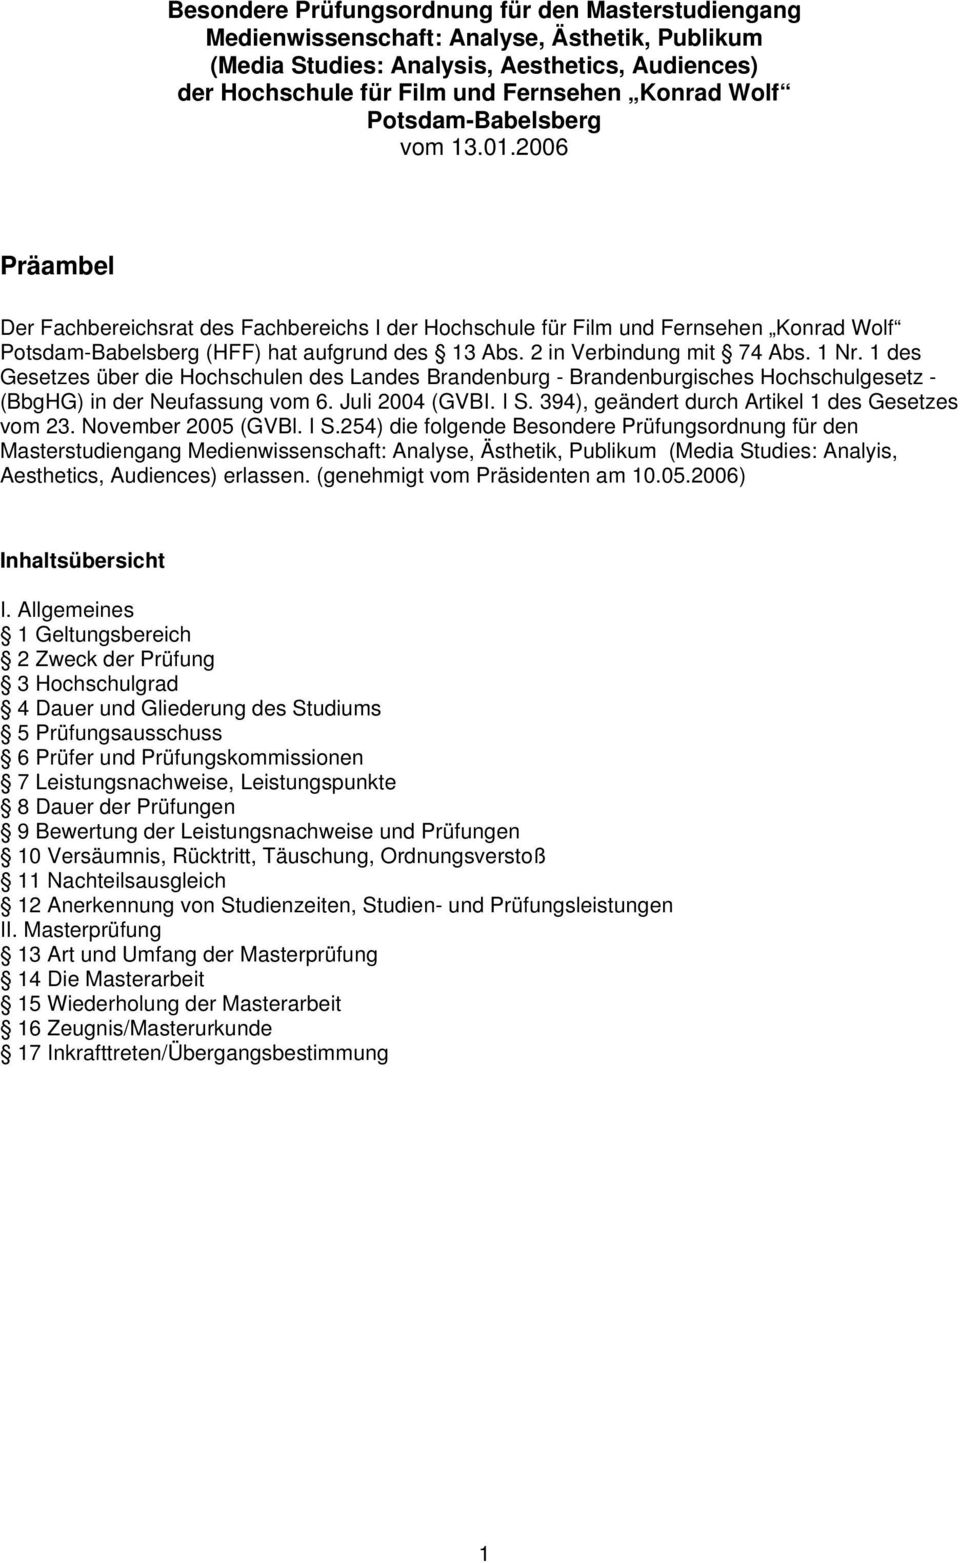 2 in Verbindung mit 74 Abs. 1 Nr. 1 des Gesetzes über die Hochschulen des Landes Brandenburg - Brandenburgisches Hochschulgesetz - (BbgHG) in der Neufassung vom 6. Juli 2004 (GVBI. I S.